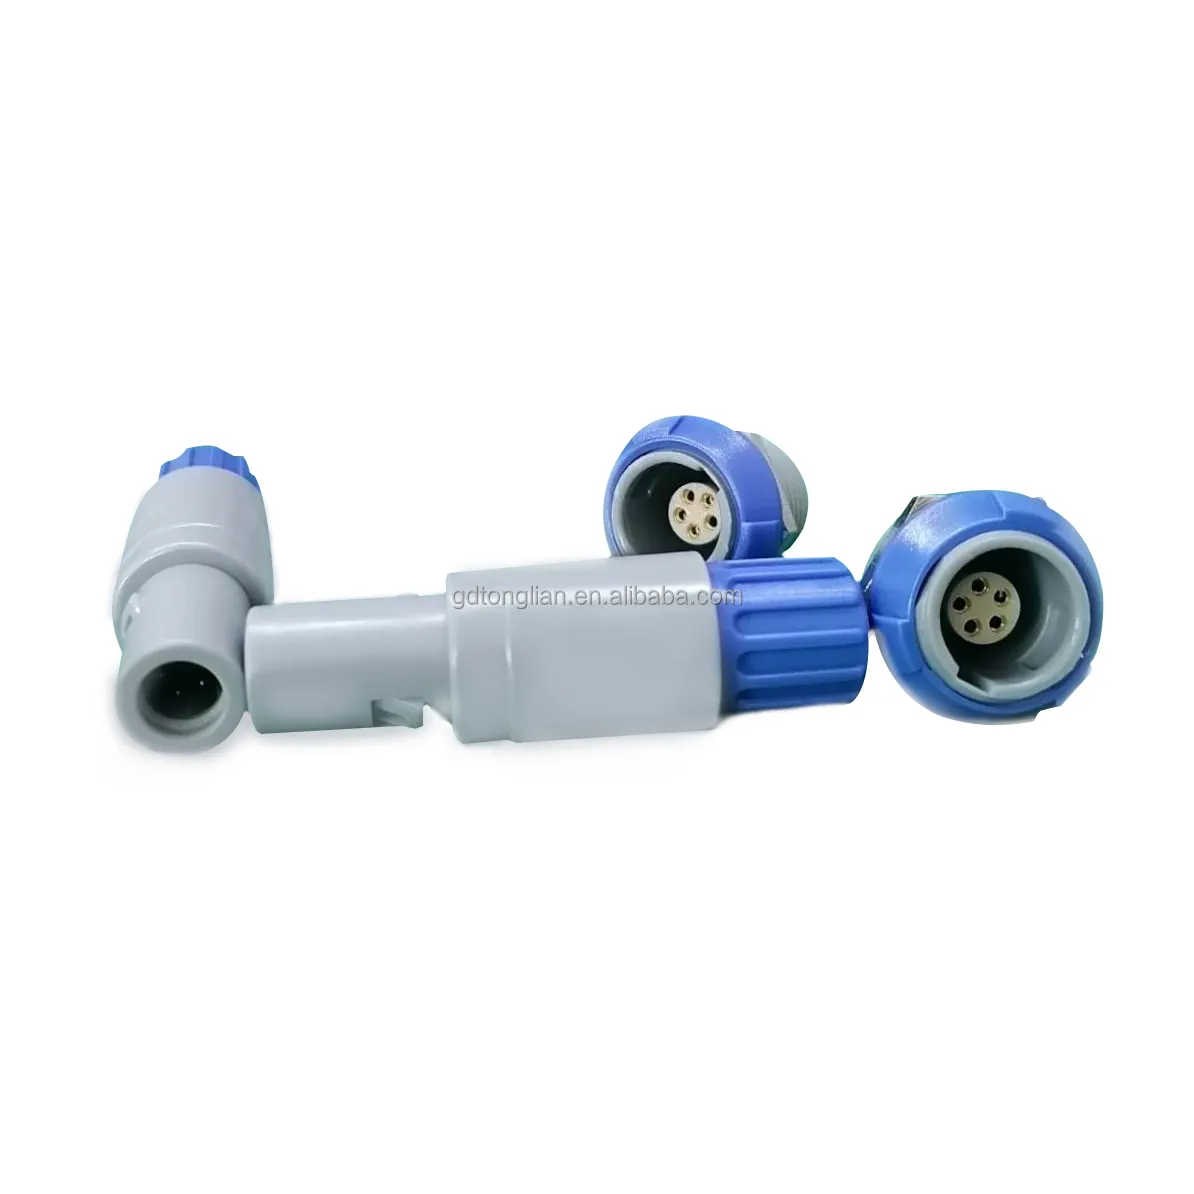 Connecteur étanche push-pull 5 broches en plastique pour équipement médical personnalisé 1P Series Blue Circular PAG Straight Plug